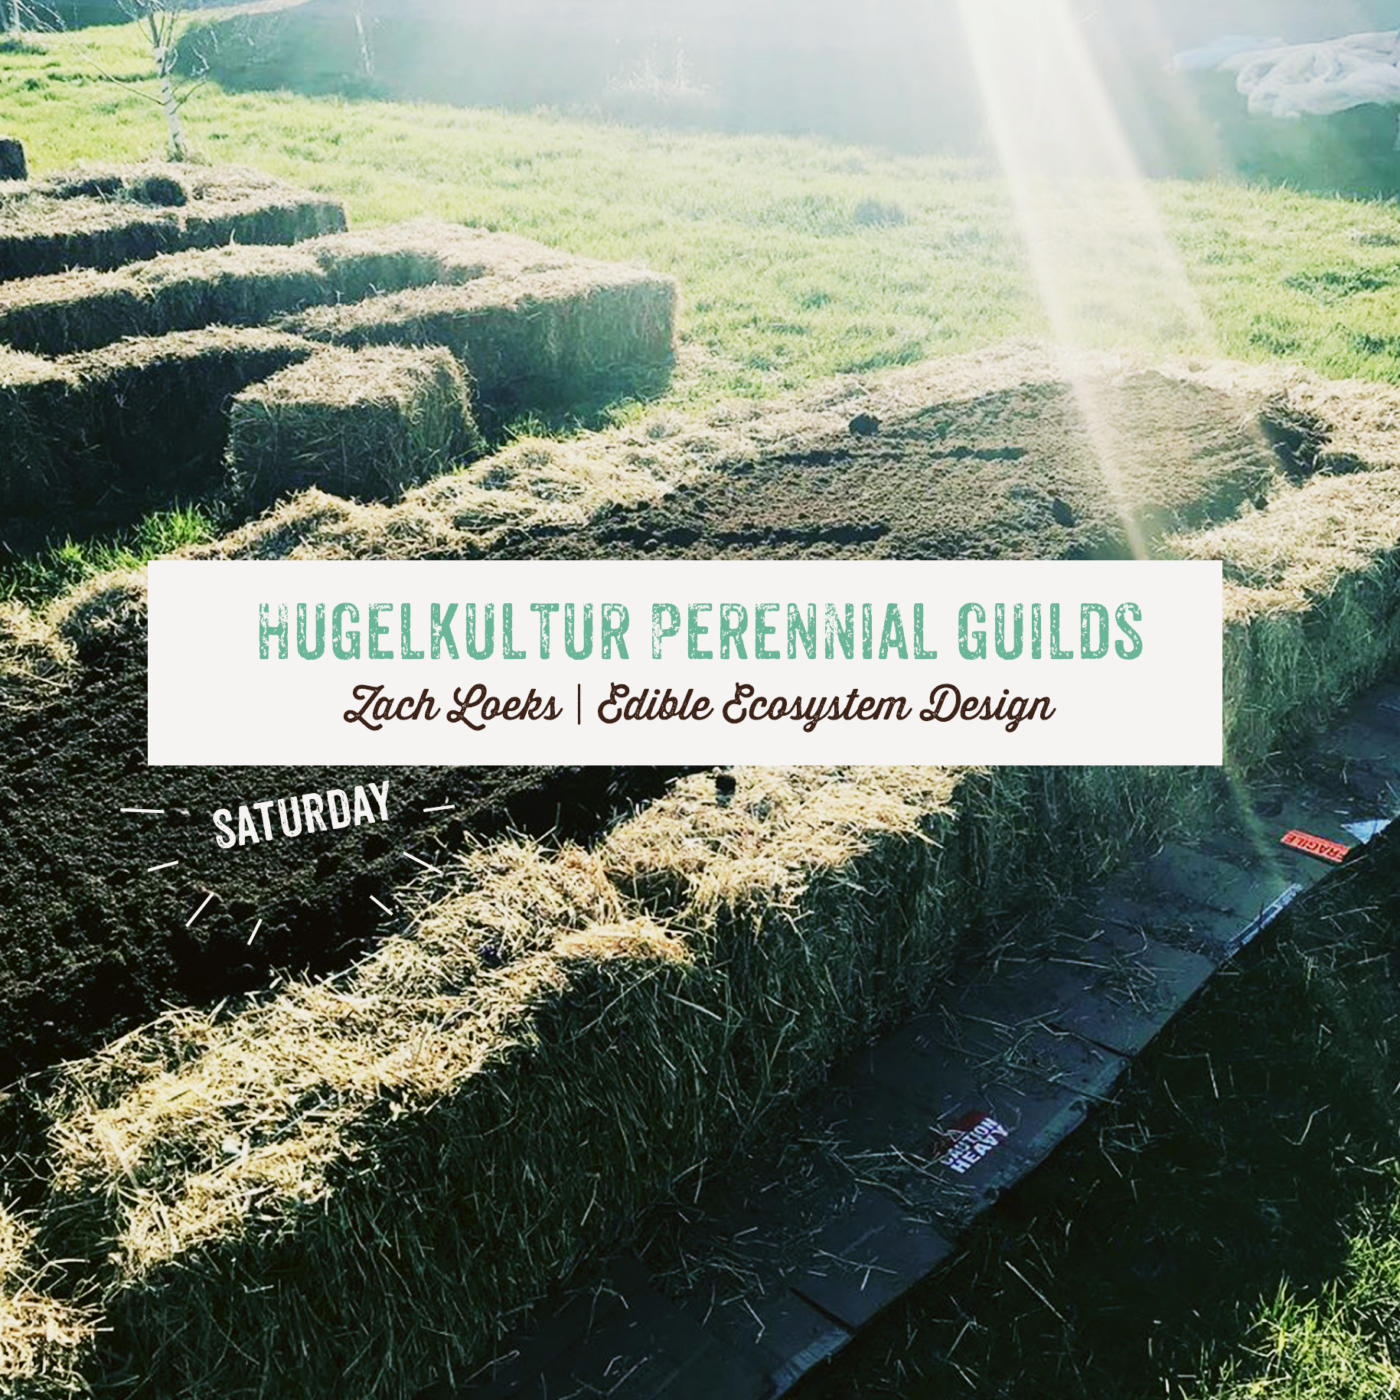 Hugelkultur Perennial Guilds